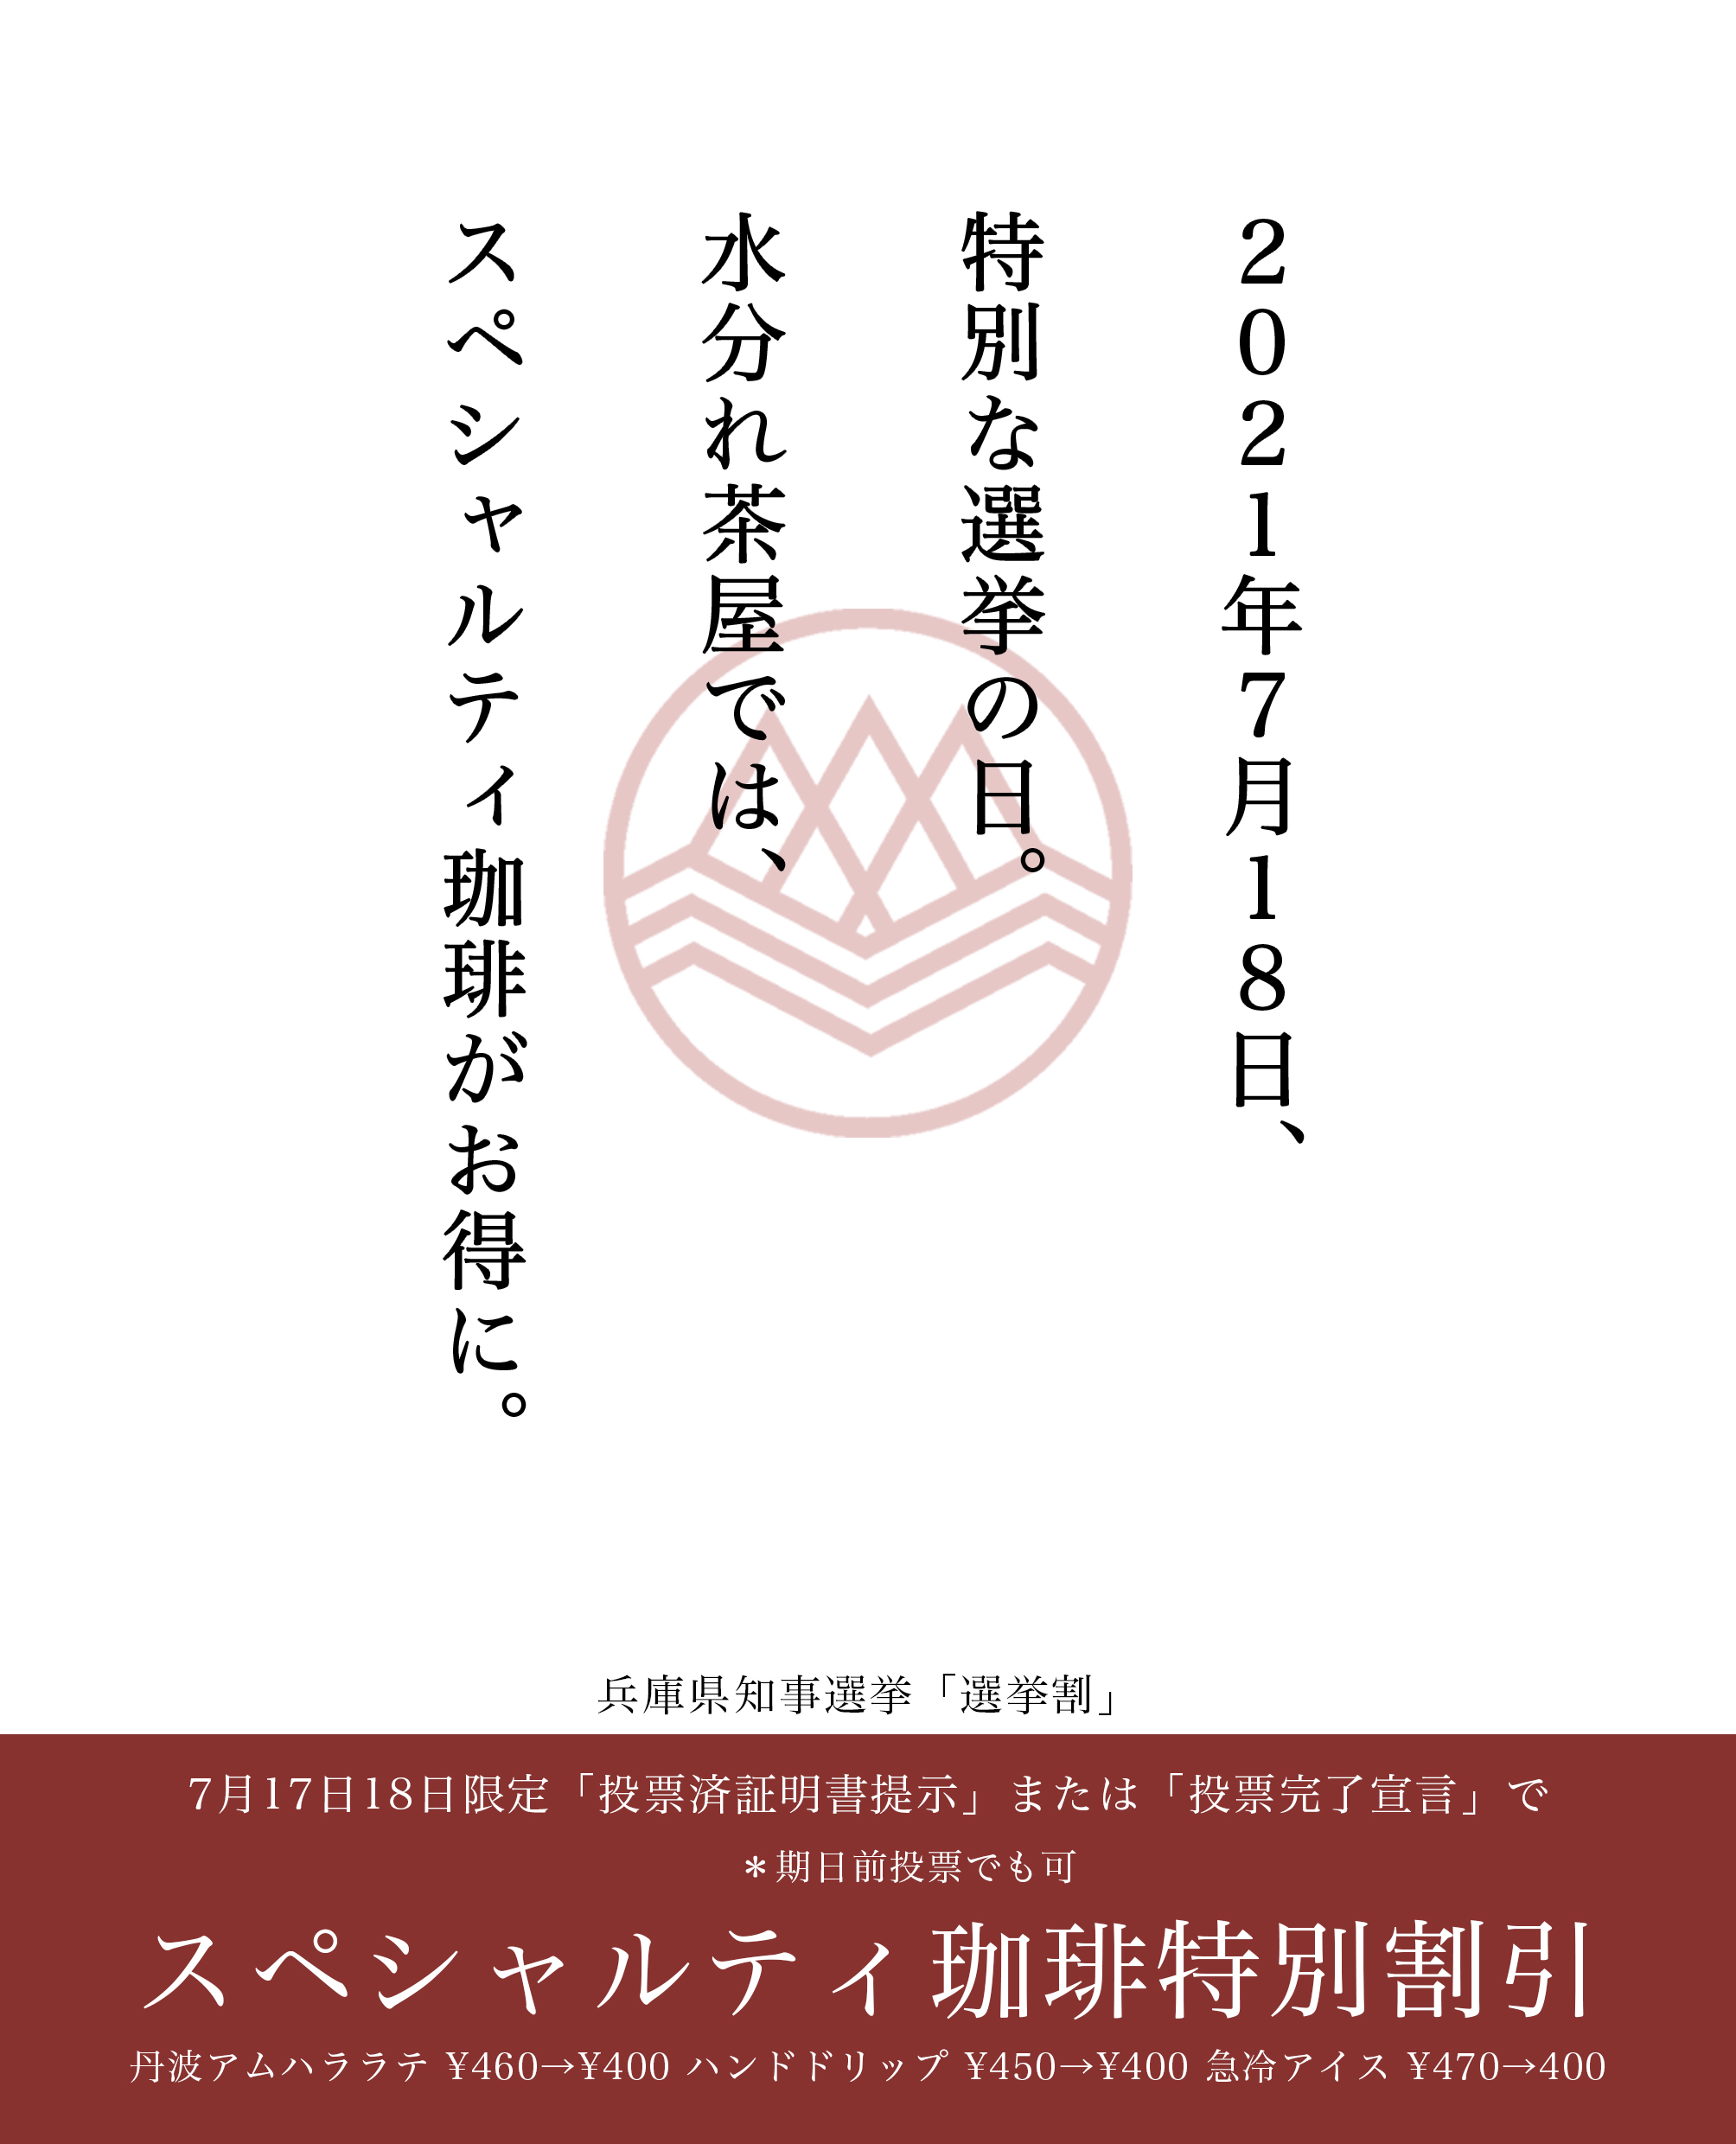 兵庫県知事選挙投票でお得に!選挙割実施 (7/17,18) - 【公式 ...